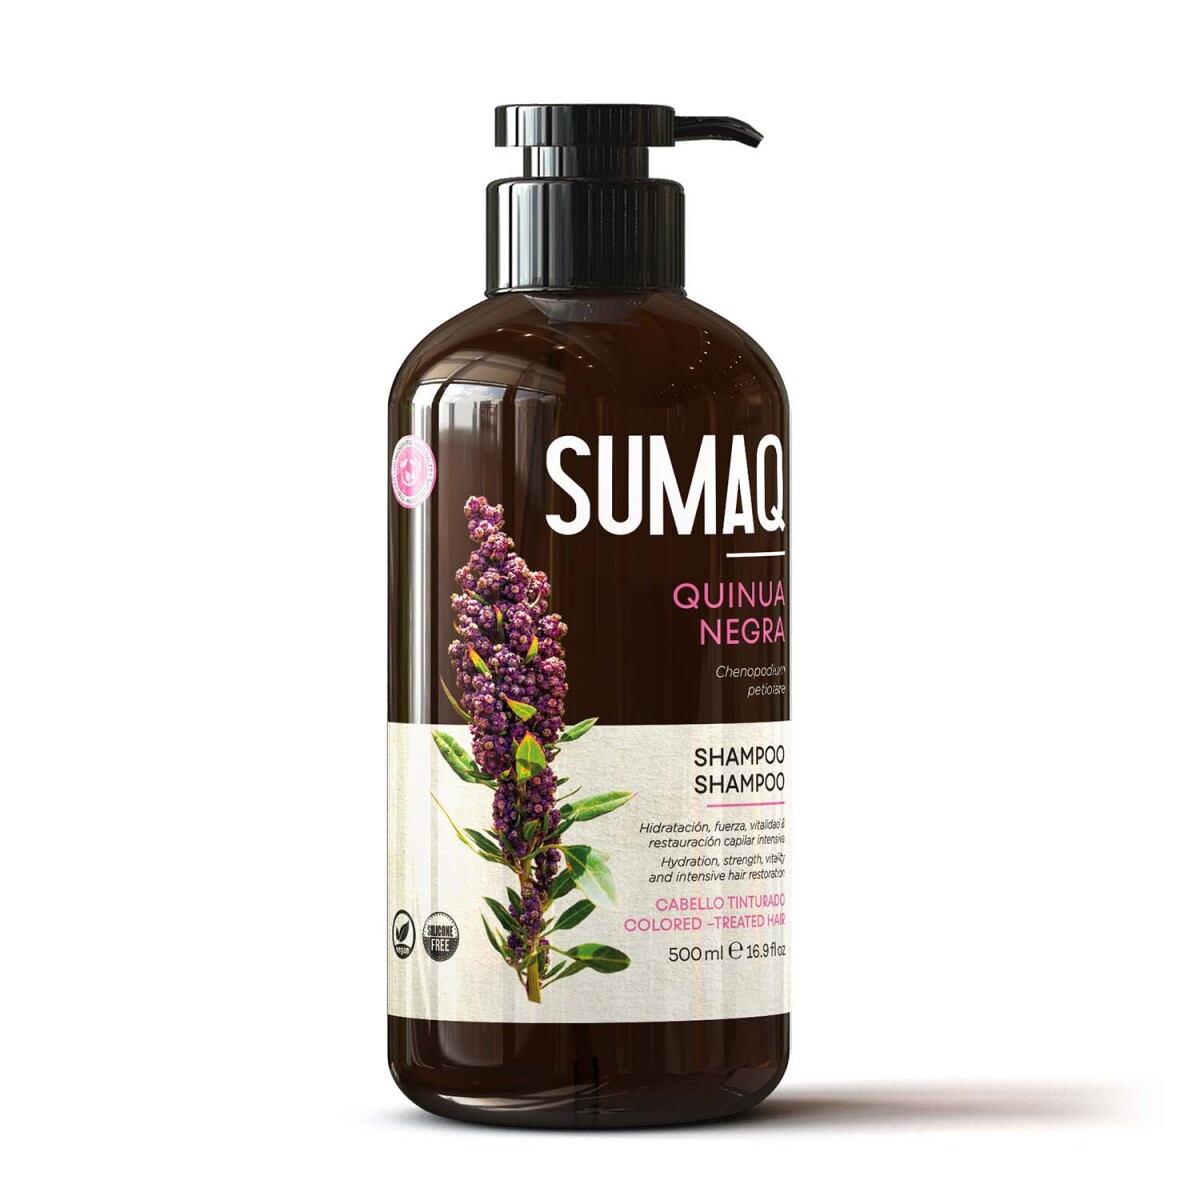 Shampoo Con Quinoa Negra Sumaq 500ml 